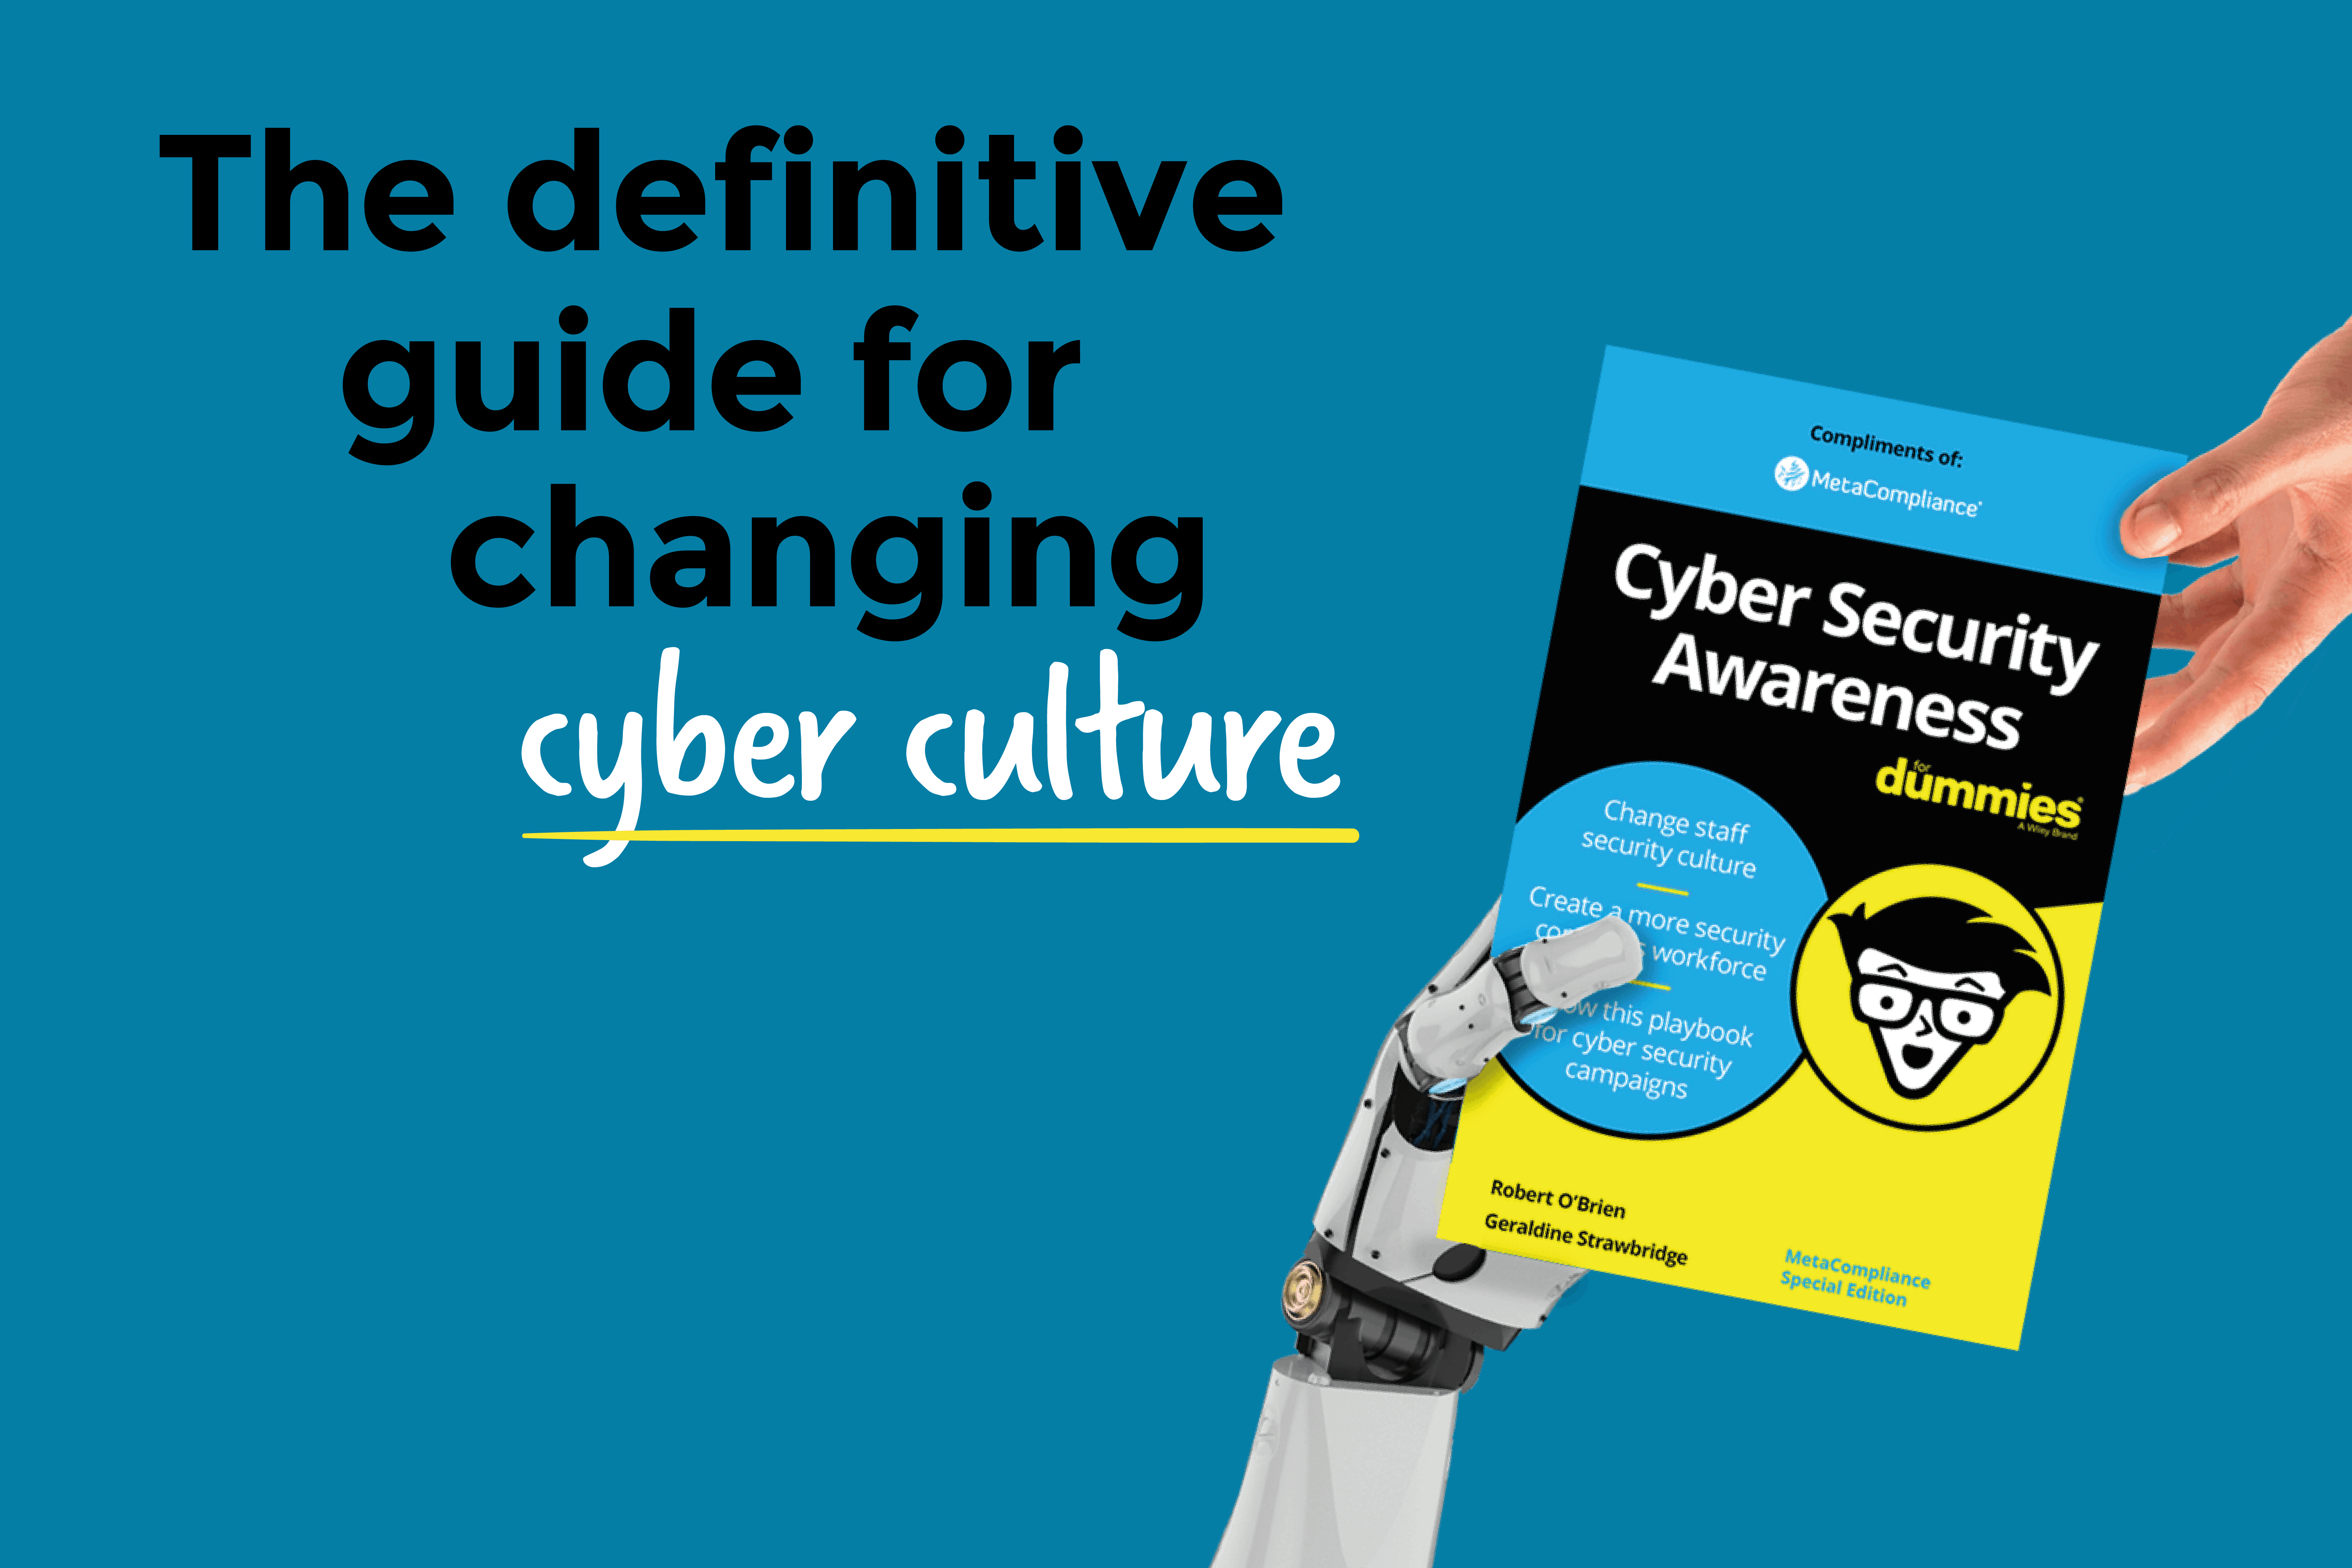 MetaCompliance lança o Livro de Jogadas Definitivo para Mudar a Cultura de Segurança Cibernética